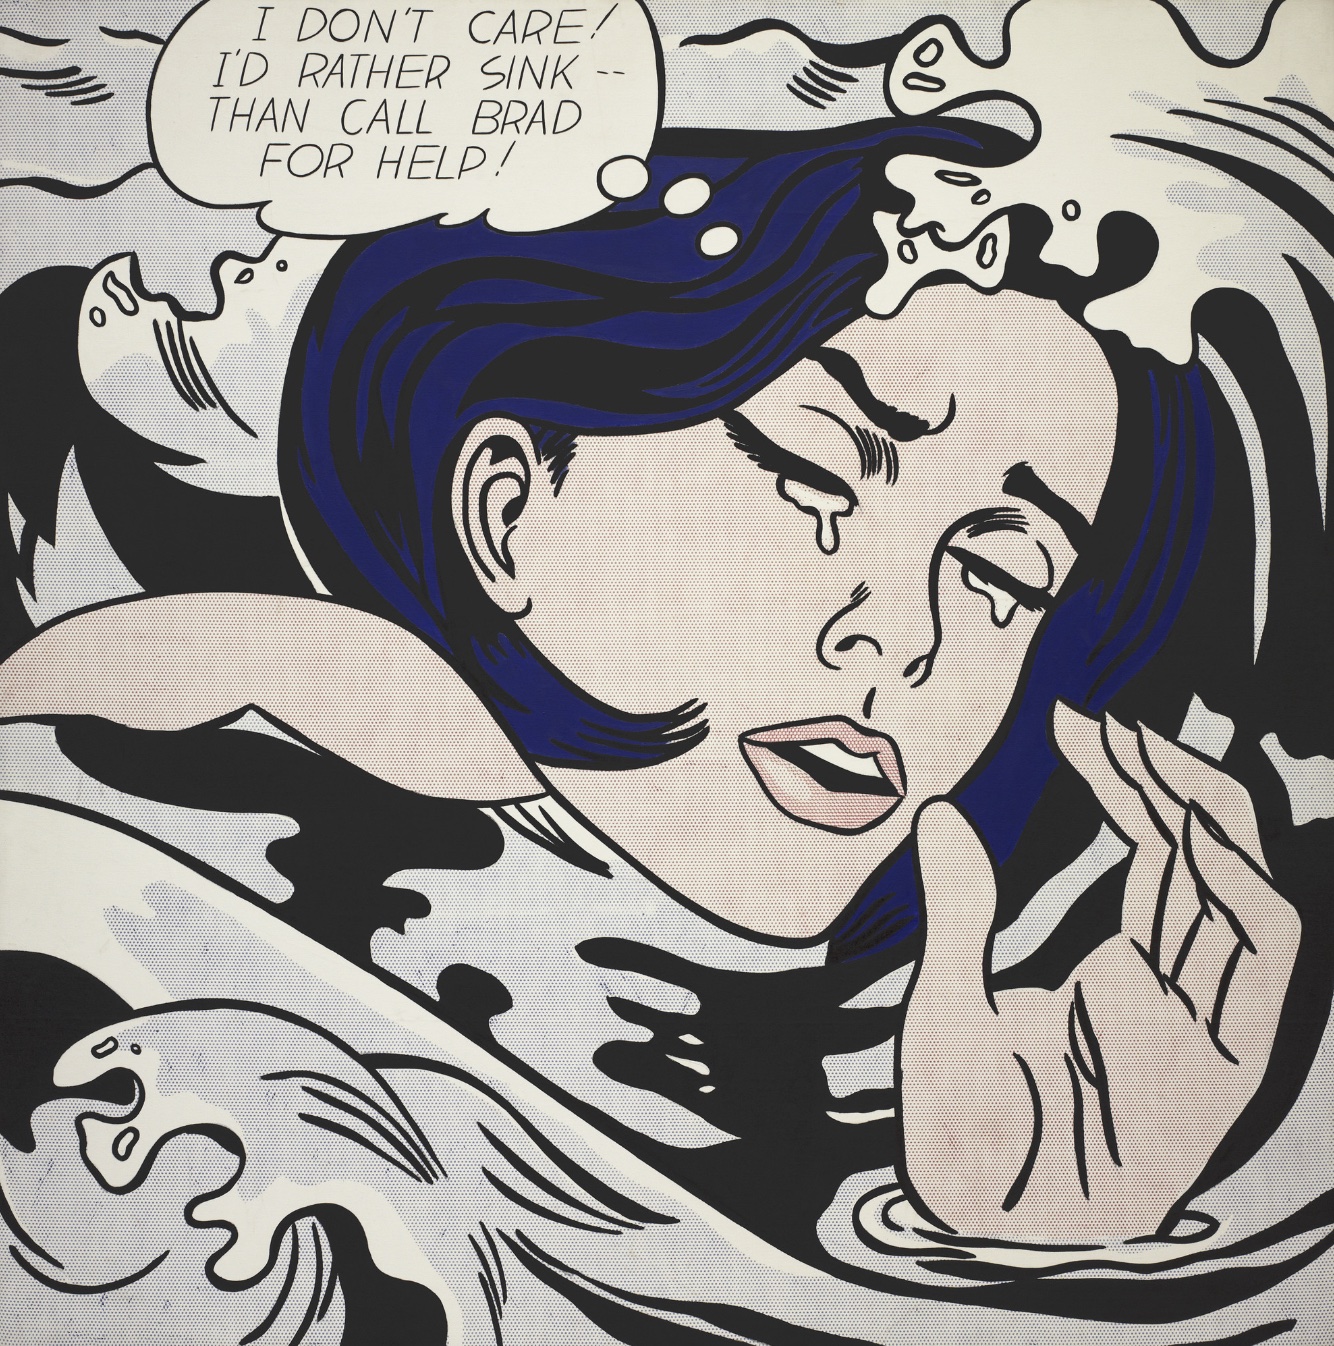 羅伊·利希滕斯坦 (Roy Lichtenstein) 的《溺水女孩》(Drowning Girl)——上面漫畫書中哭泣的女人形象。